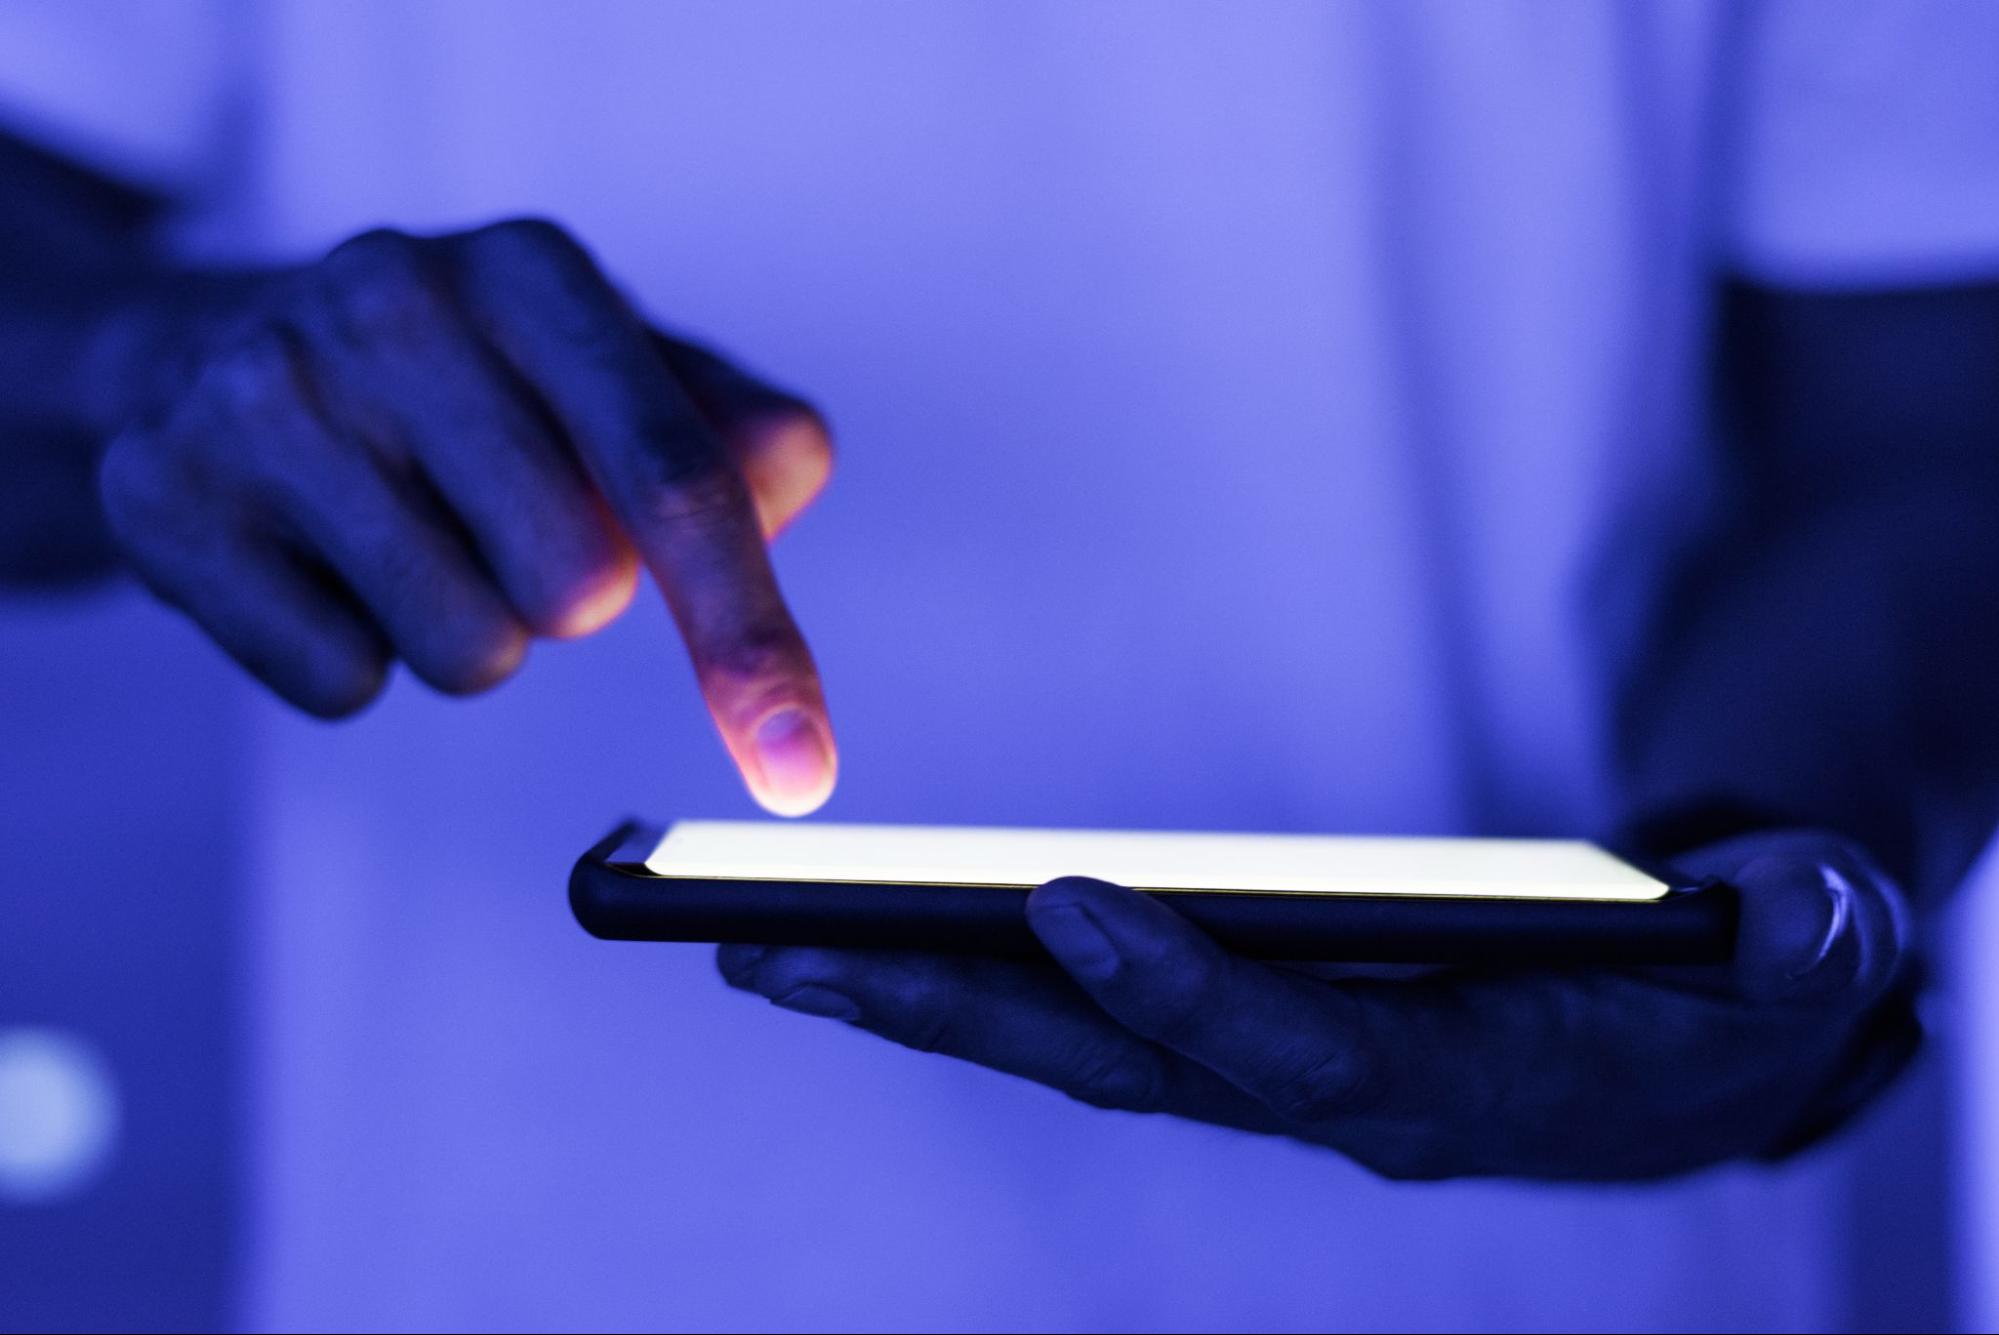 Imagem de uma pessoa mexendo em um smartphone. Destaque para o smartphone e para o dedo indicador da pessoa.